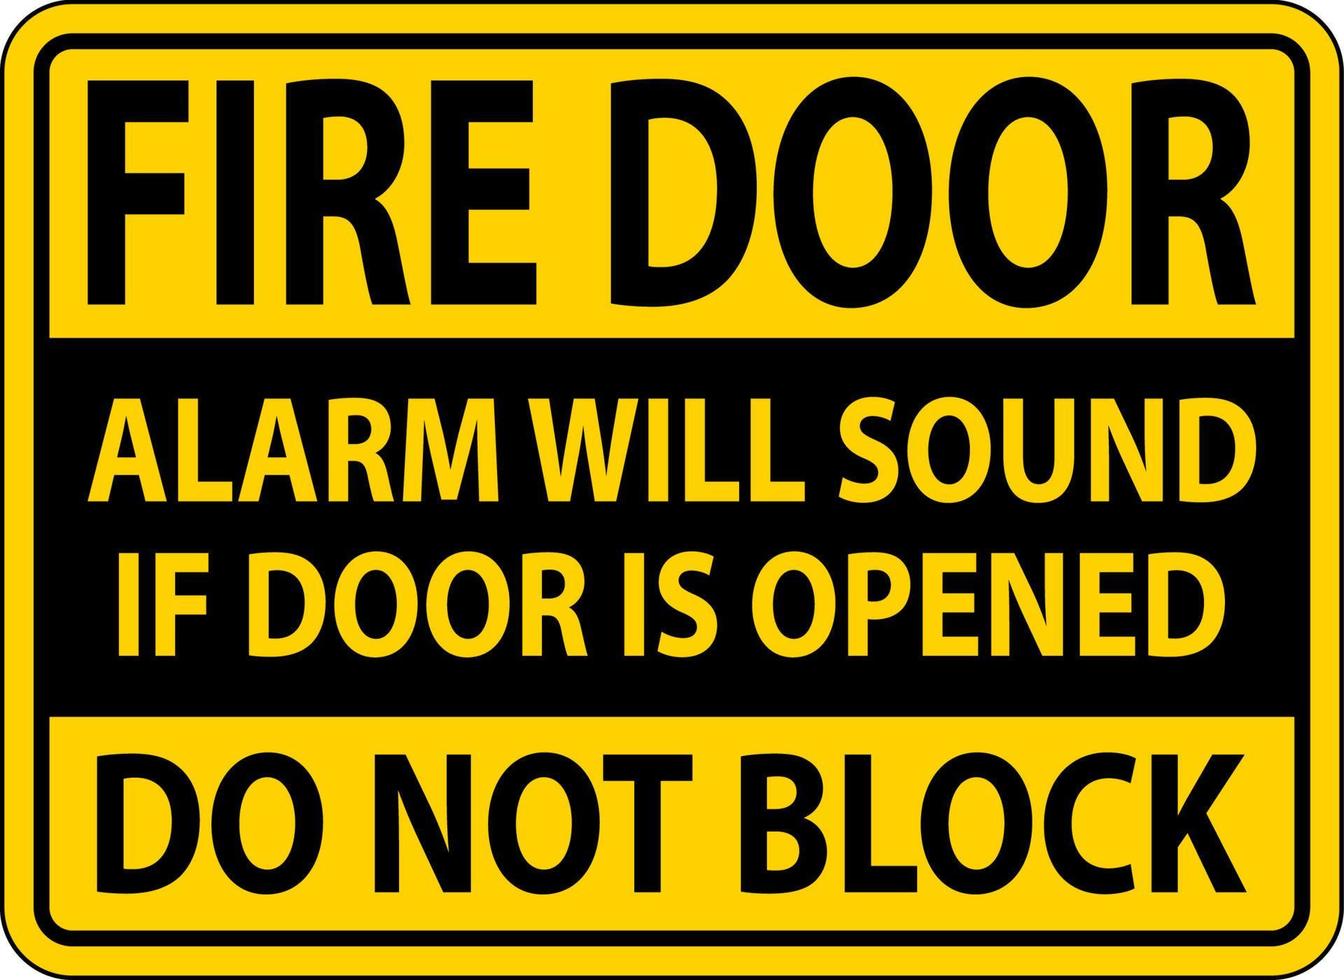 Fire Door Alarm Will Sound If Opened Sign vector